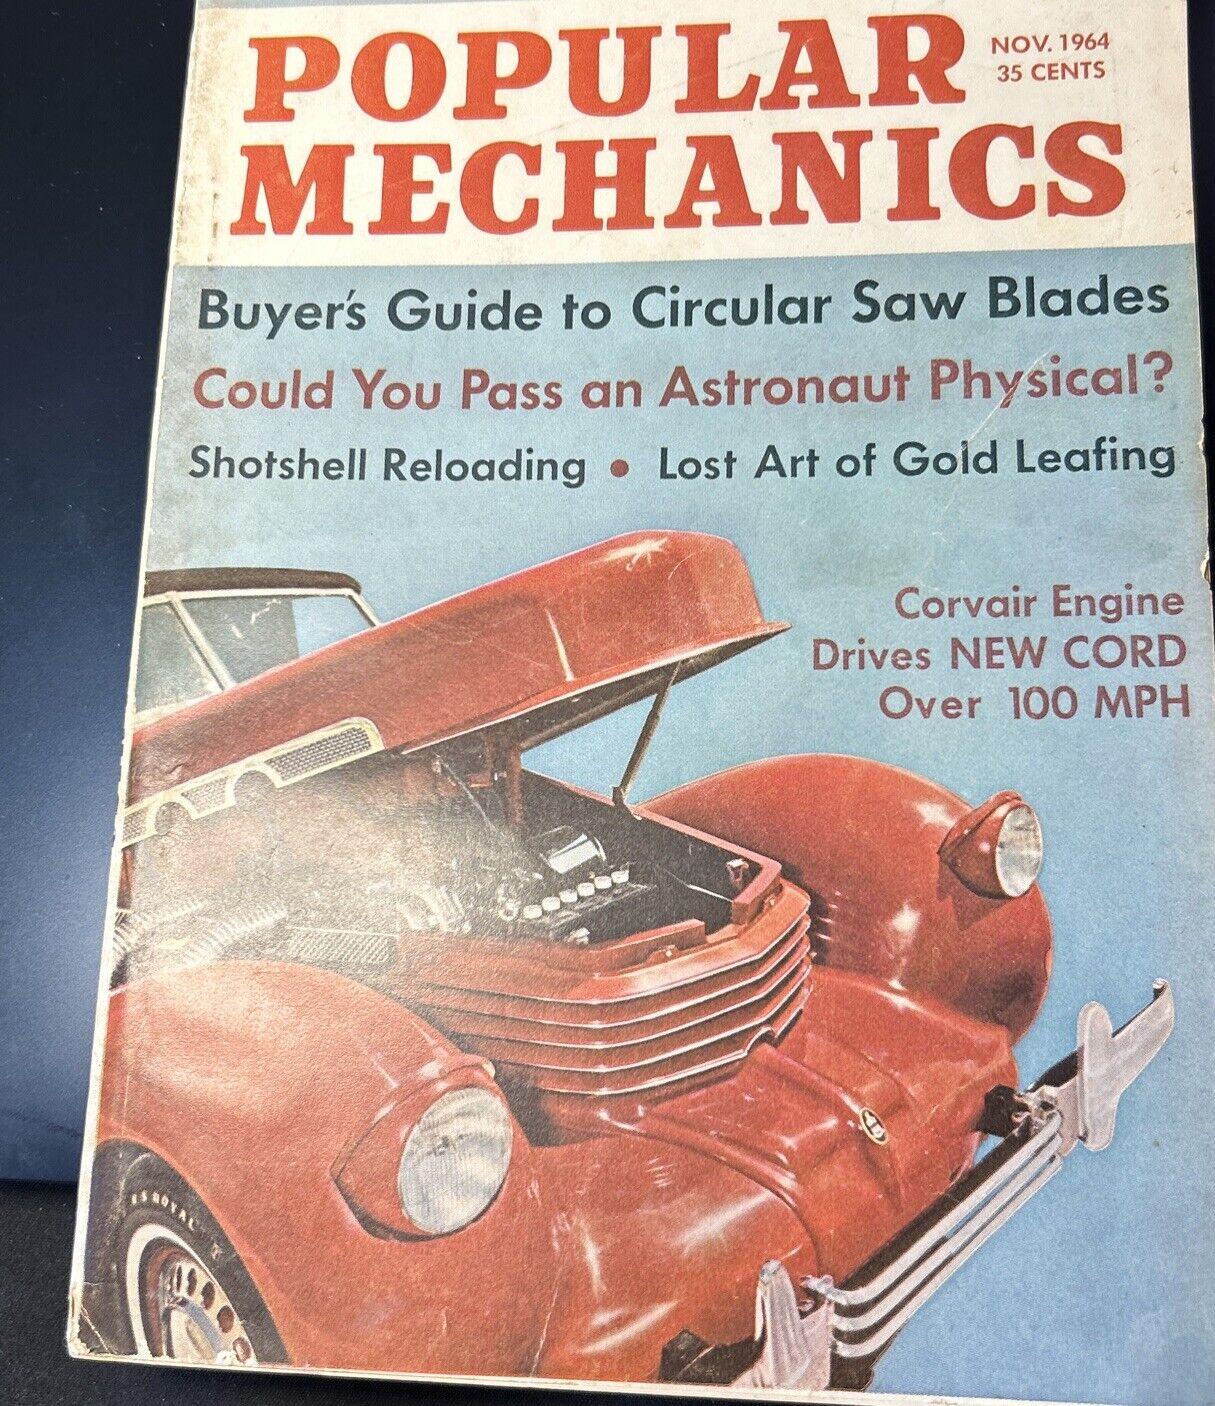 VTG |published November 1964 Popular Mechanics Magazine Complete